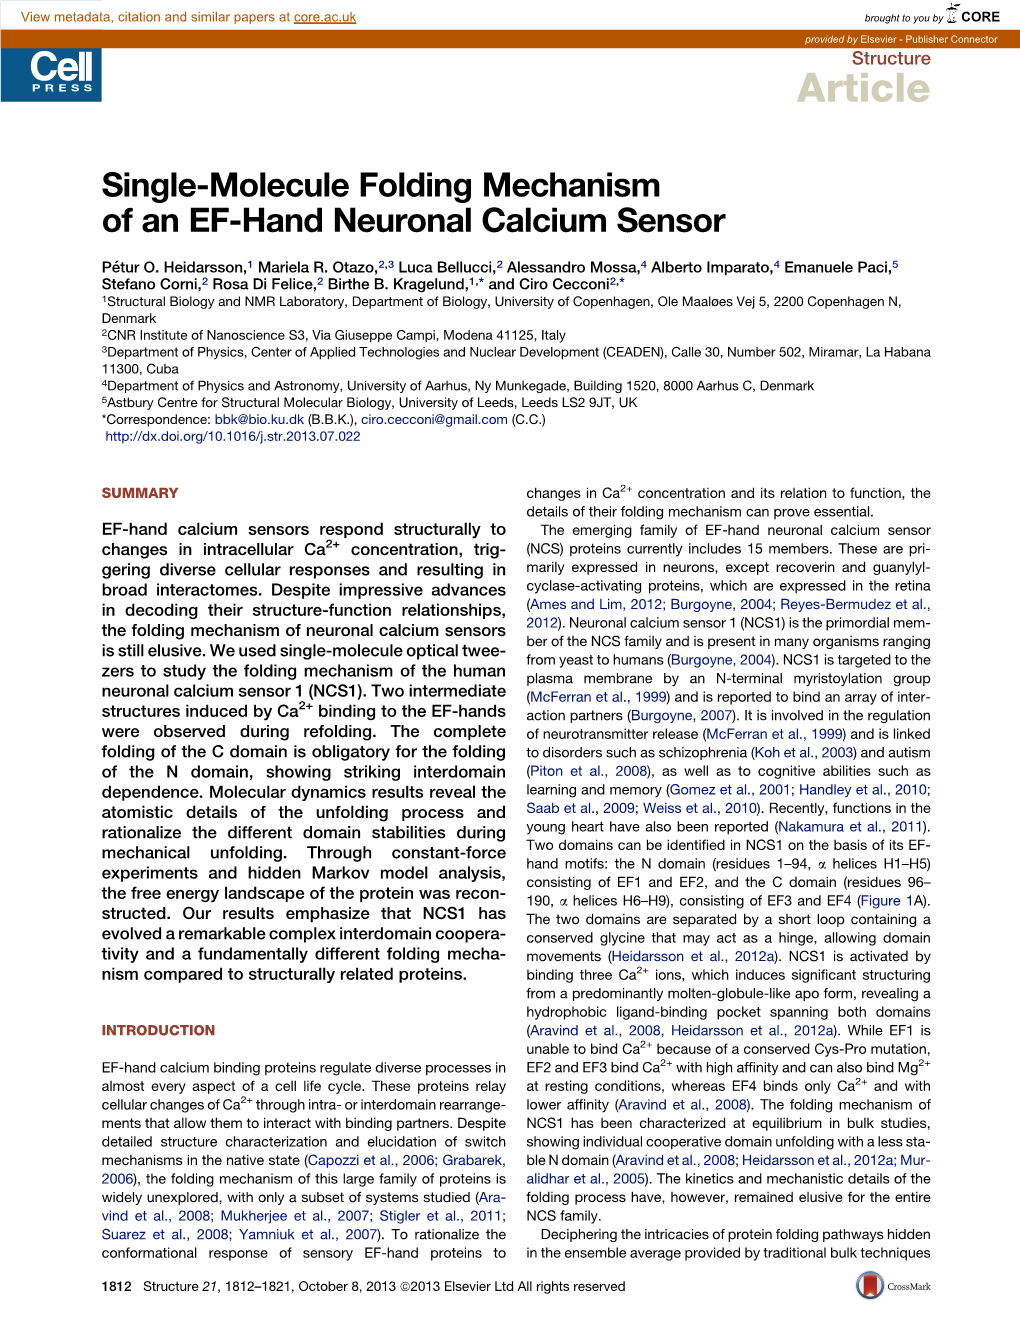 Single-Molecule Folding Mechanism of an EF-Hand Neuronal Calcium Sensor